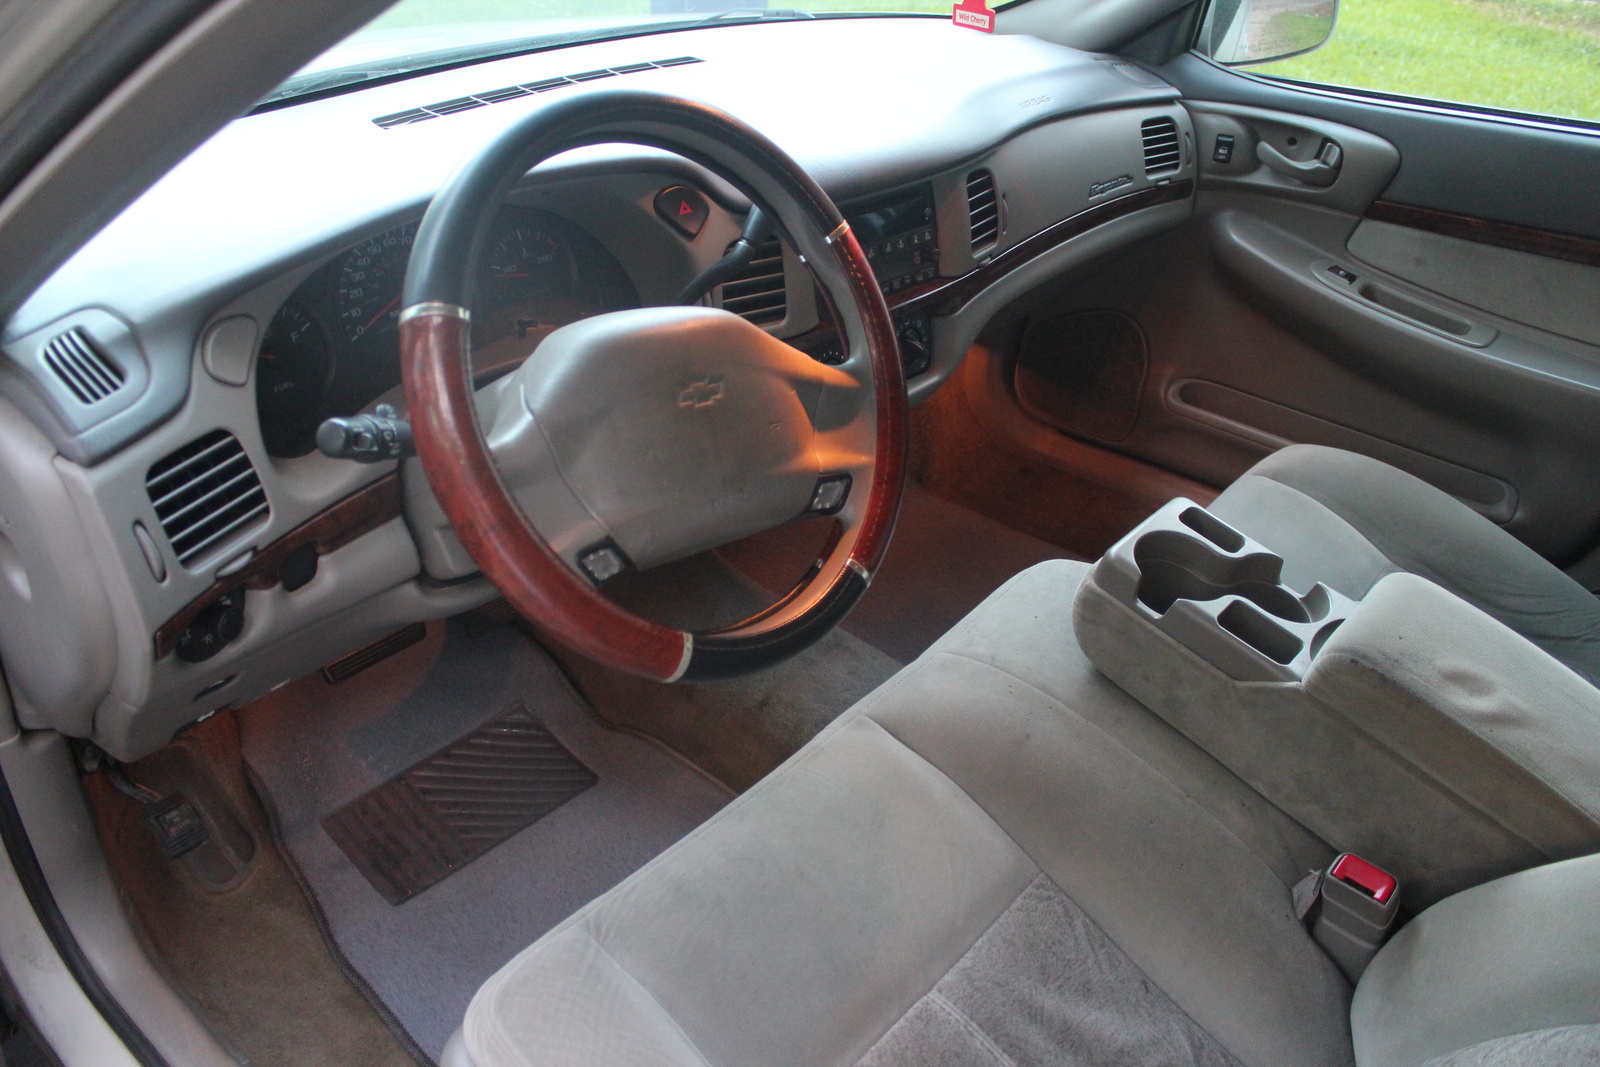 2004 Chevrolet Impala - Pictures - CarGurus